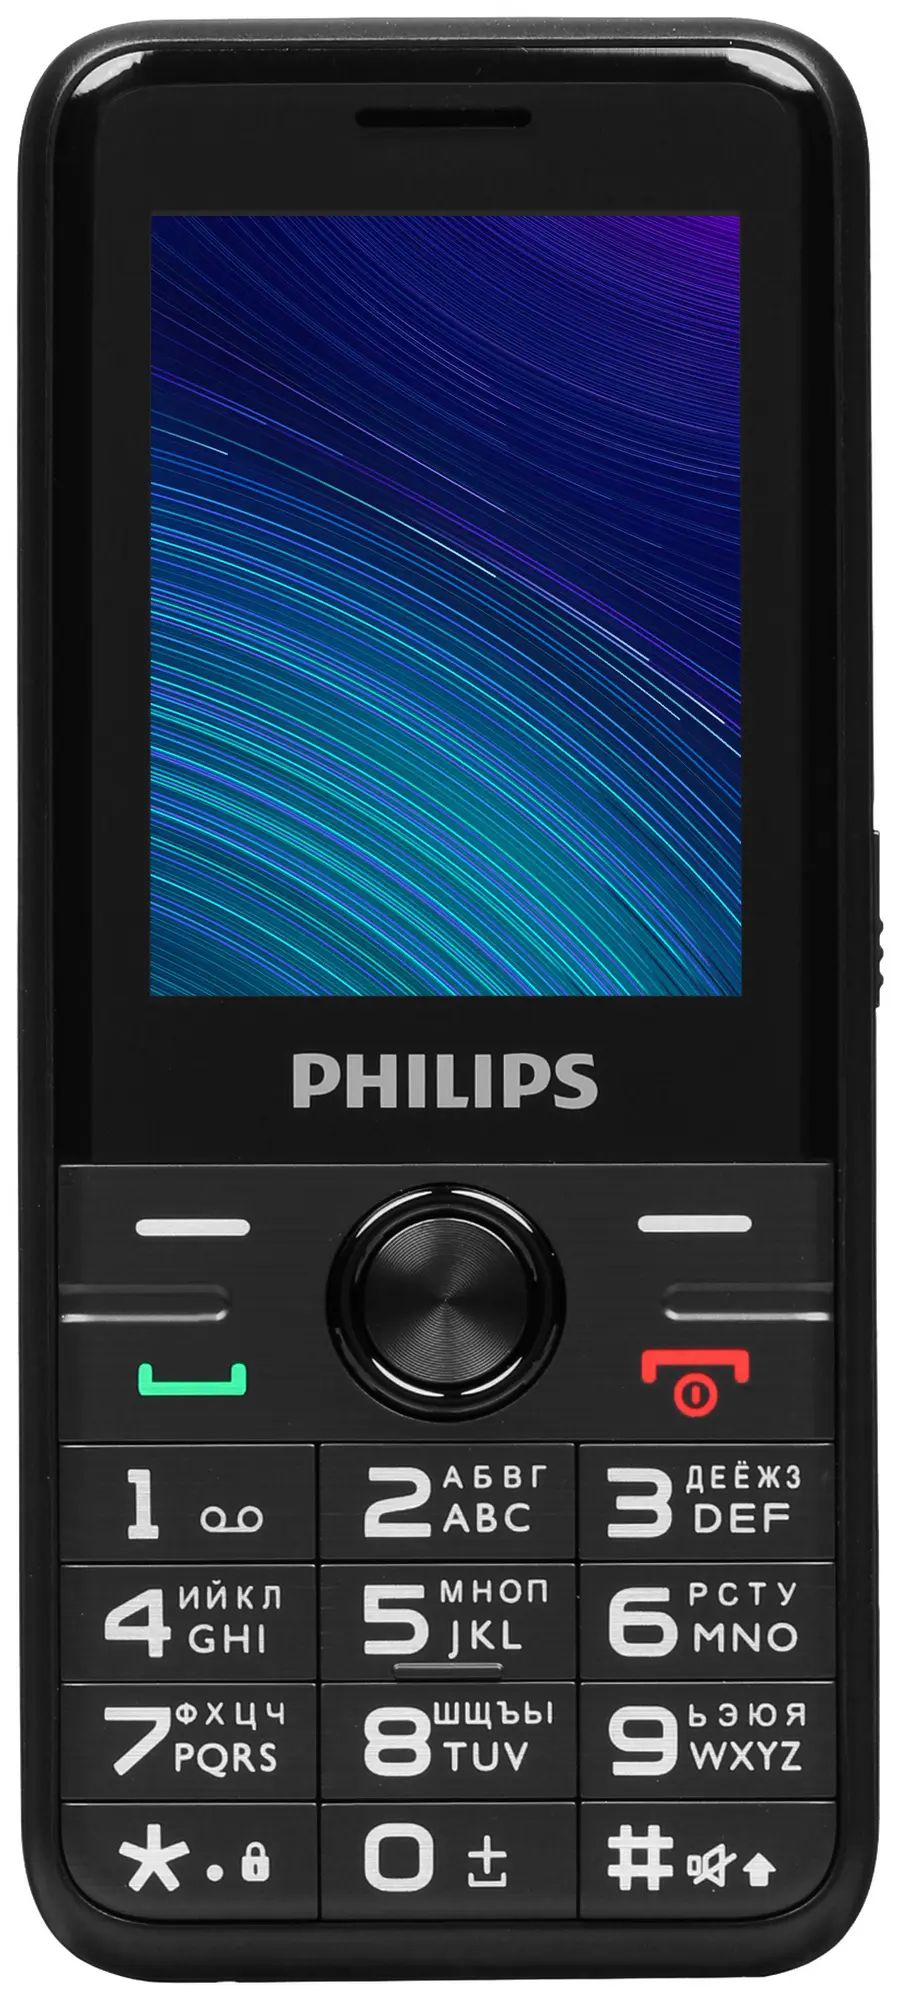 Мобильный телефон Philips Е6500 Xenium 0.048 черный моноблок 4G 2Sim 2.4" 240x320 0.3Mpix, купить в Москве, цены в интернет-магазинах на Мегамаркет